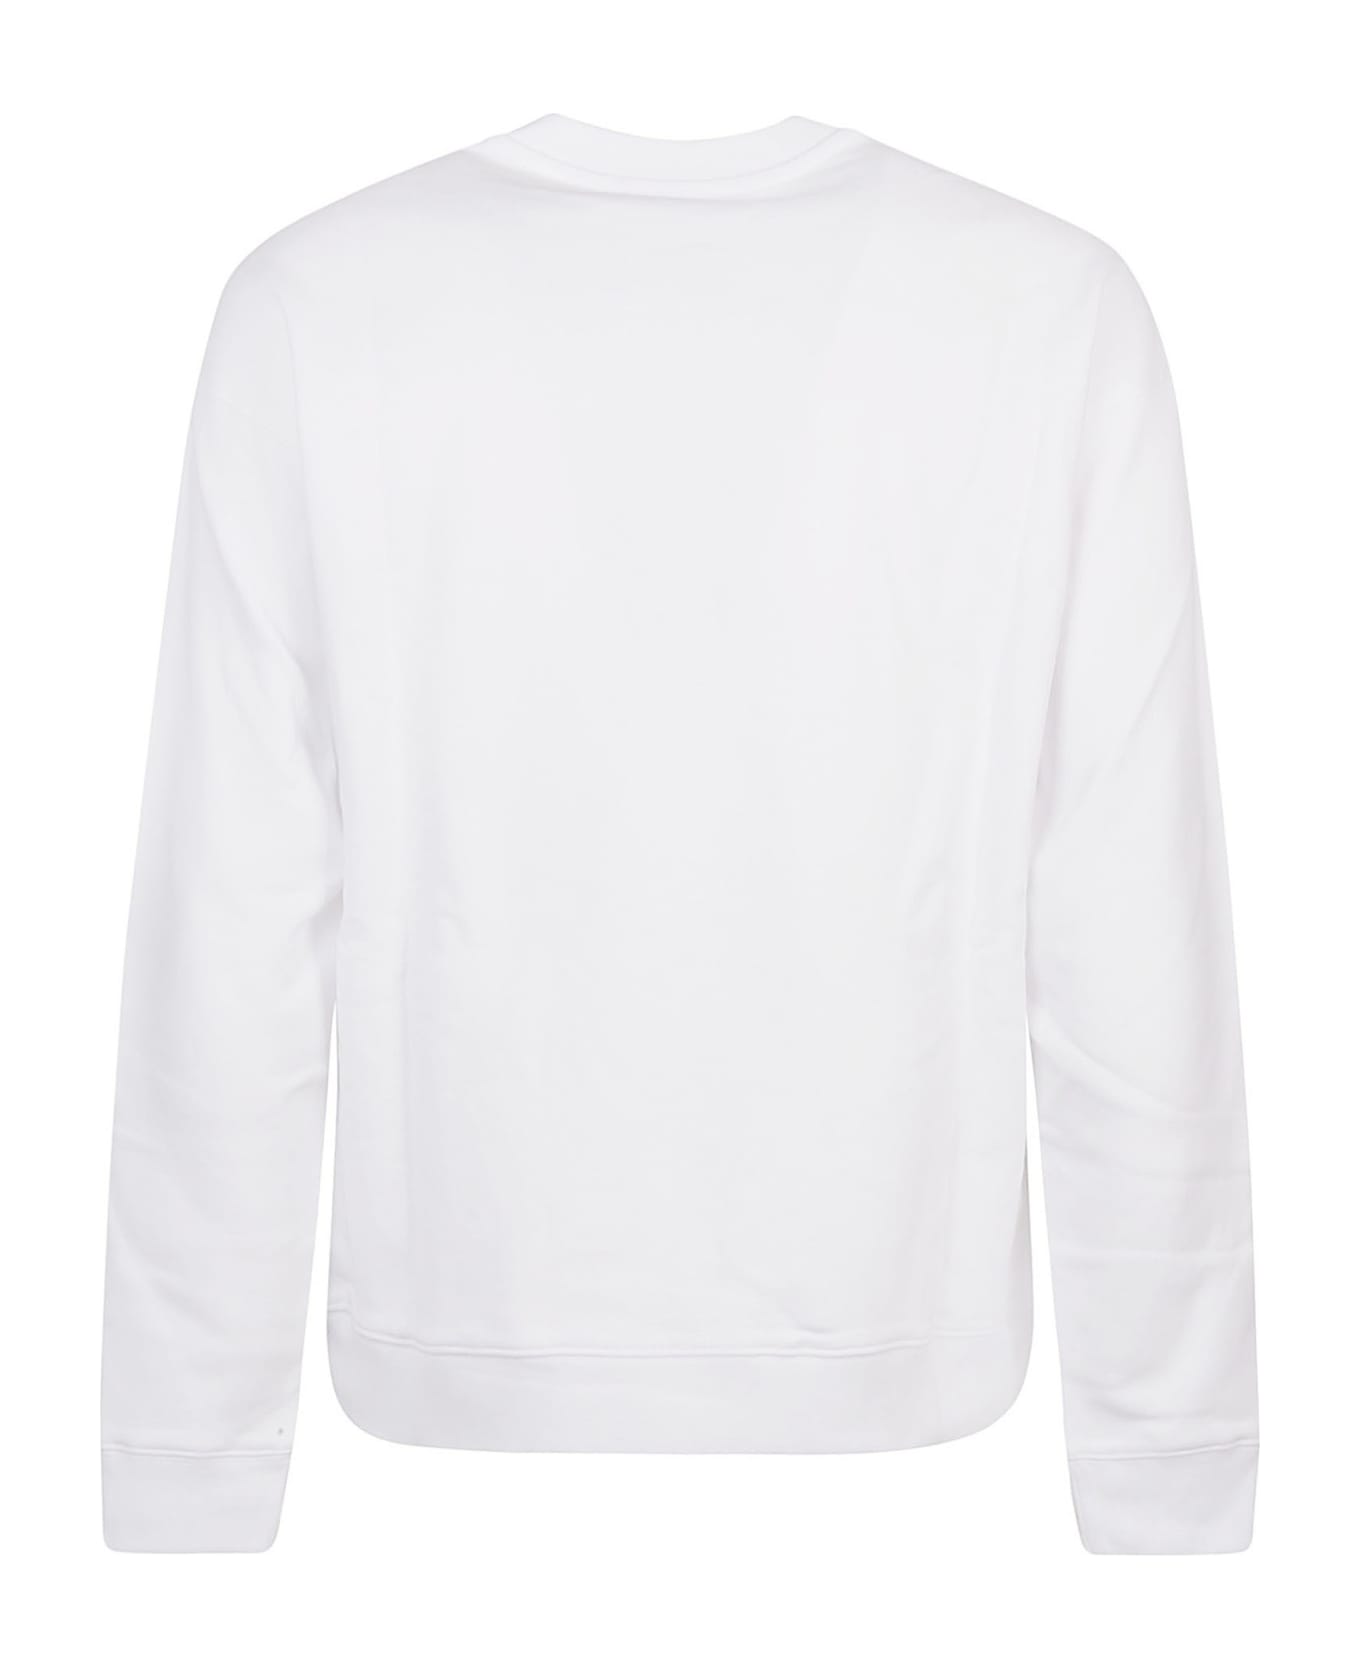 Moschino Printed Logo Sweatshirt - Bianco Fantasia